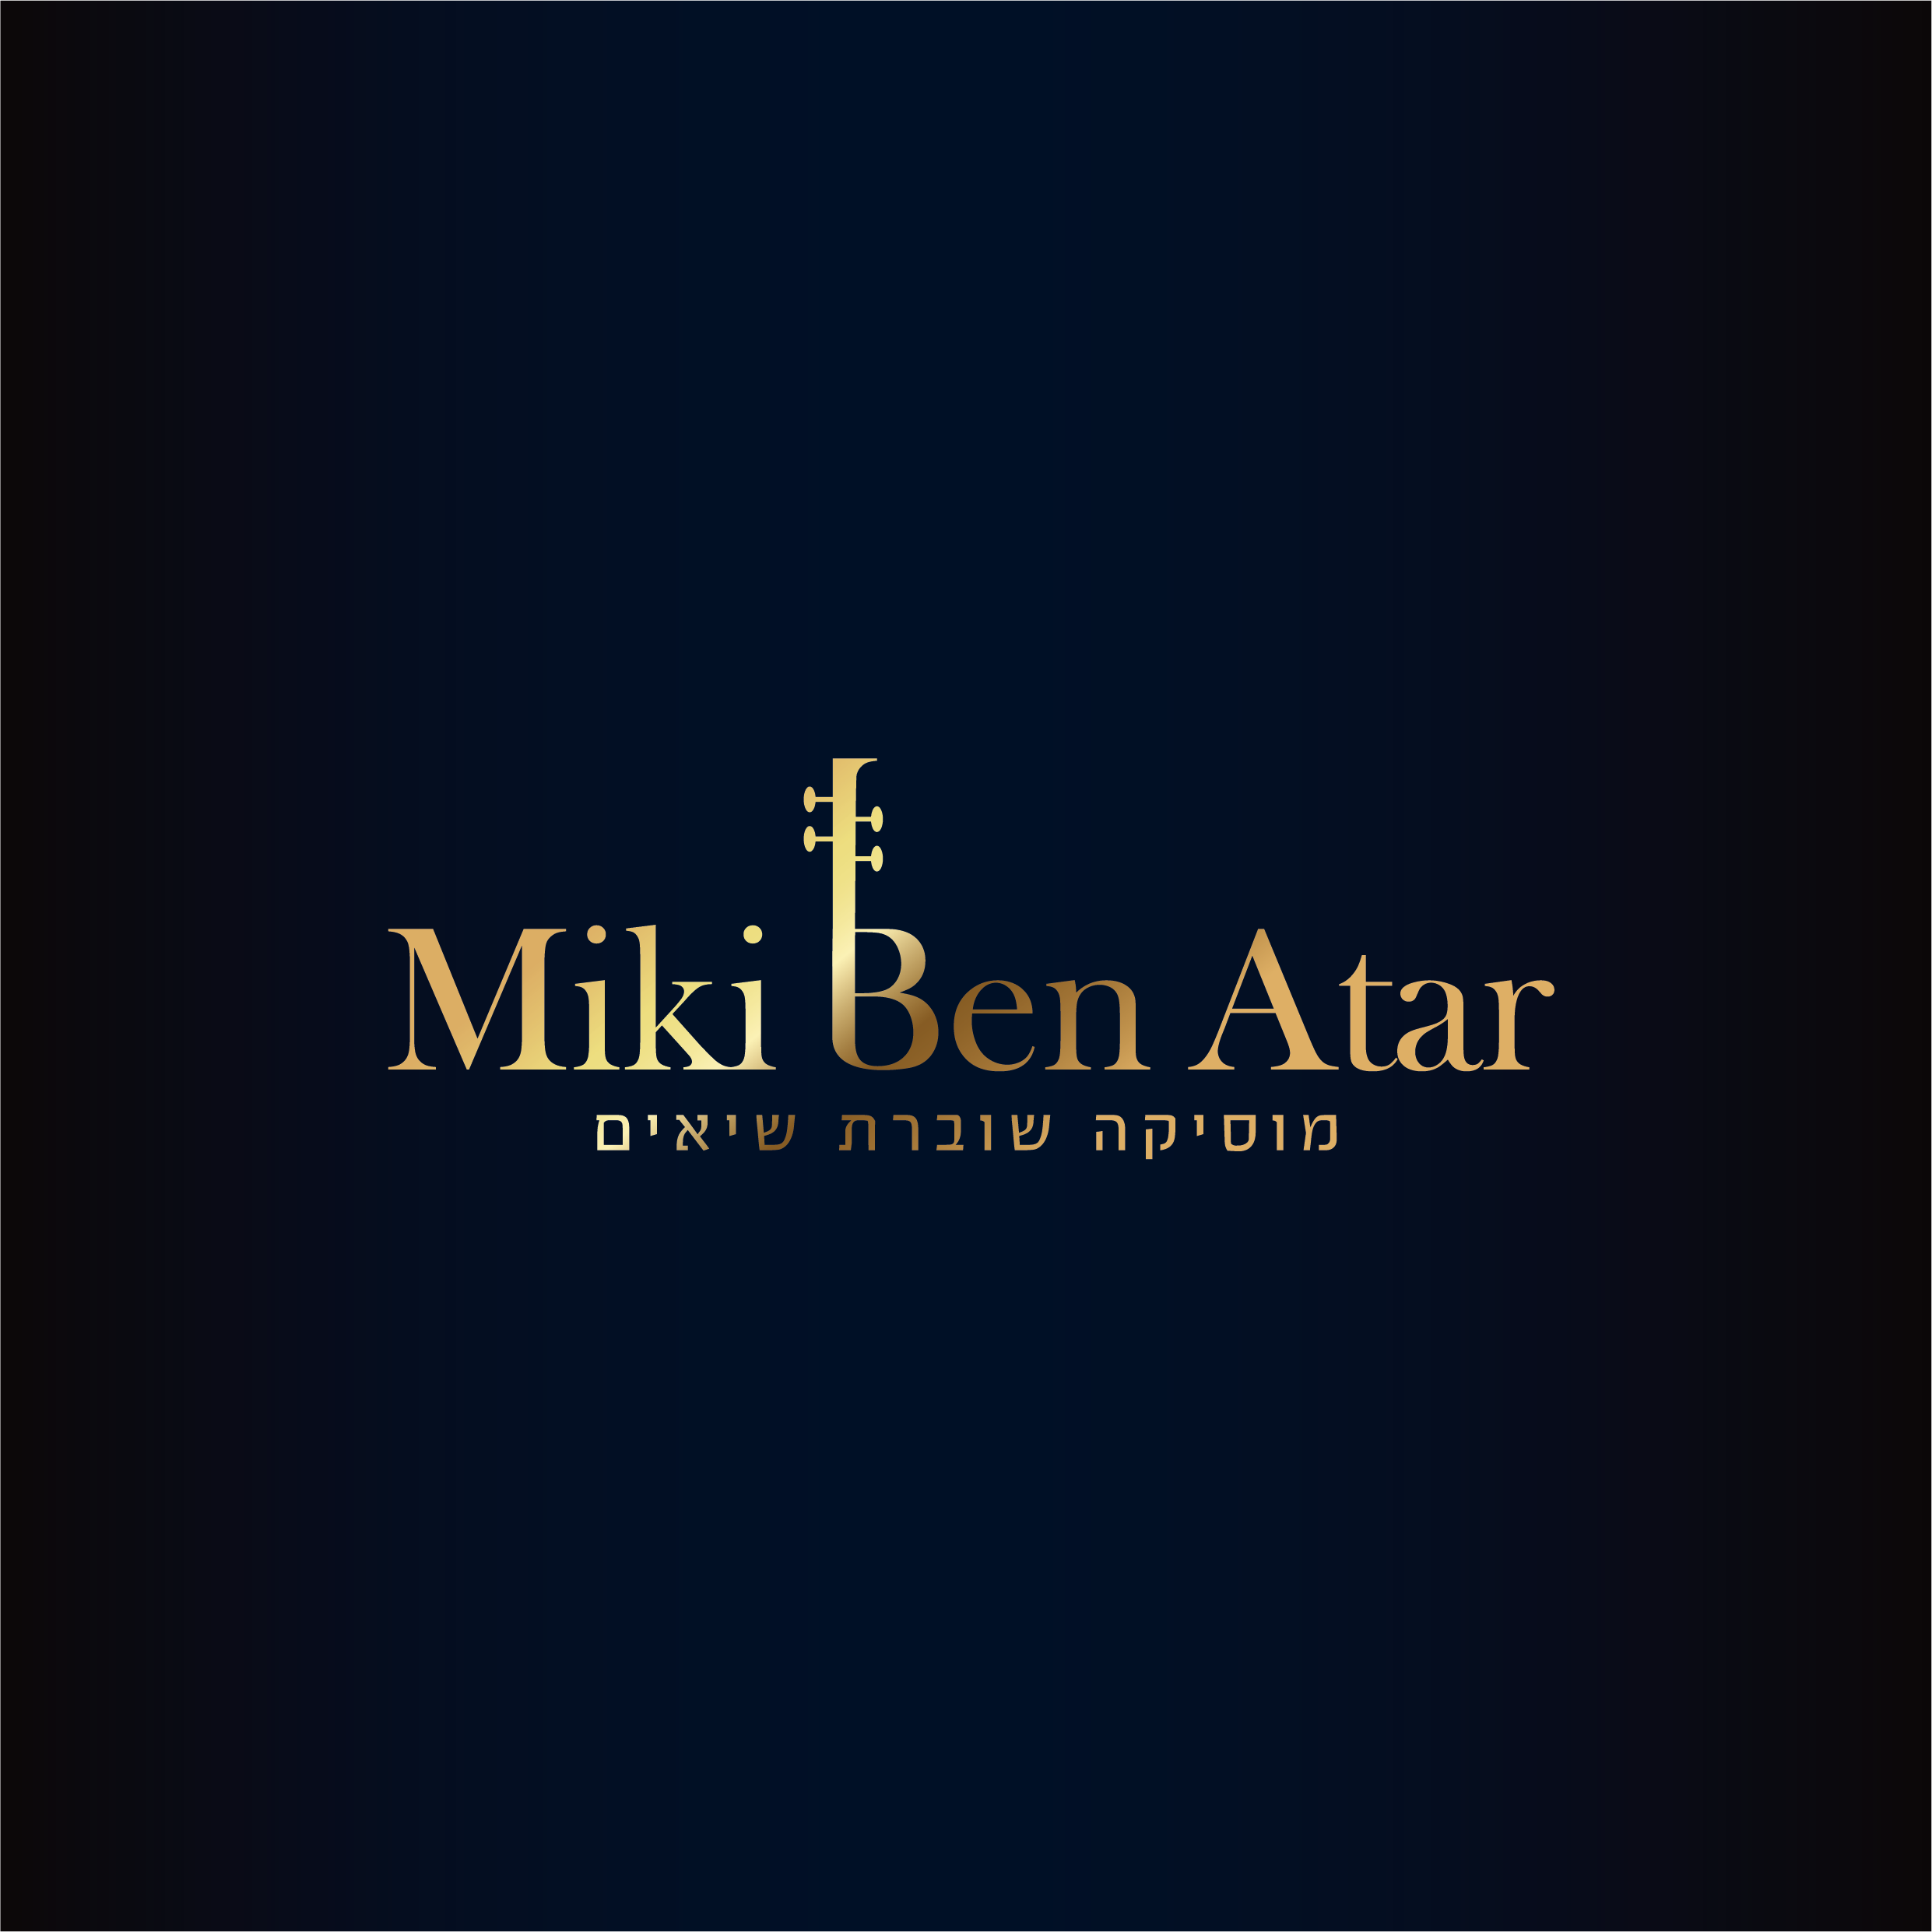 Miki - logo-06.png